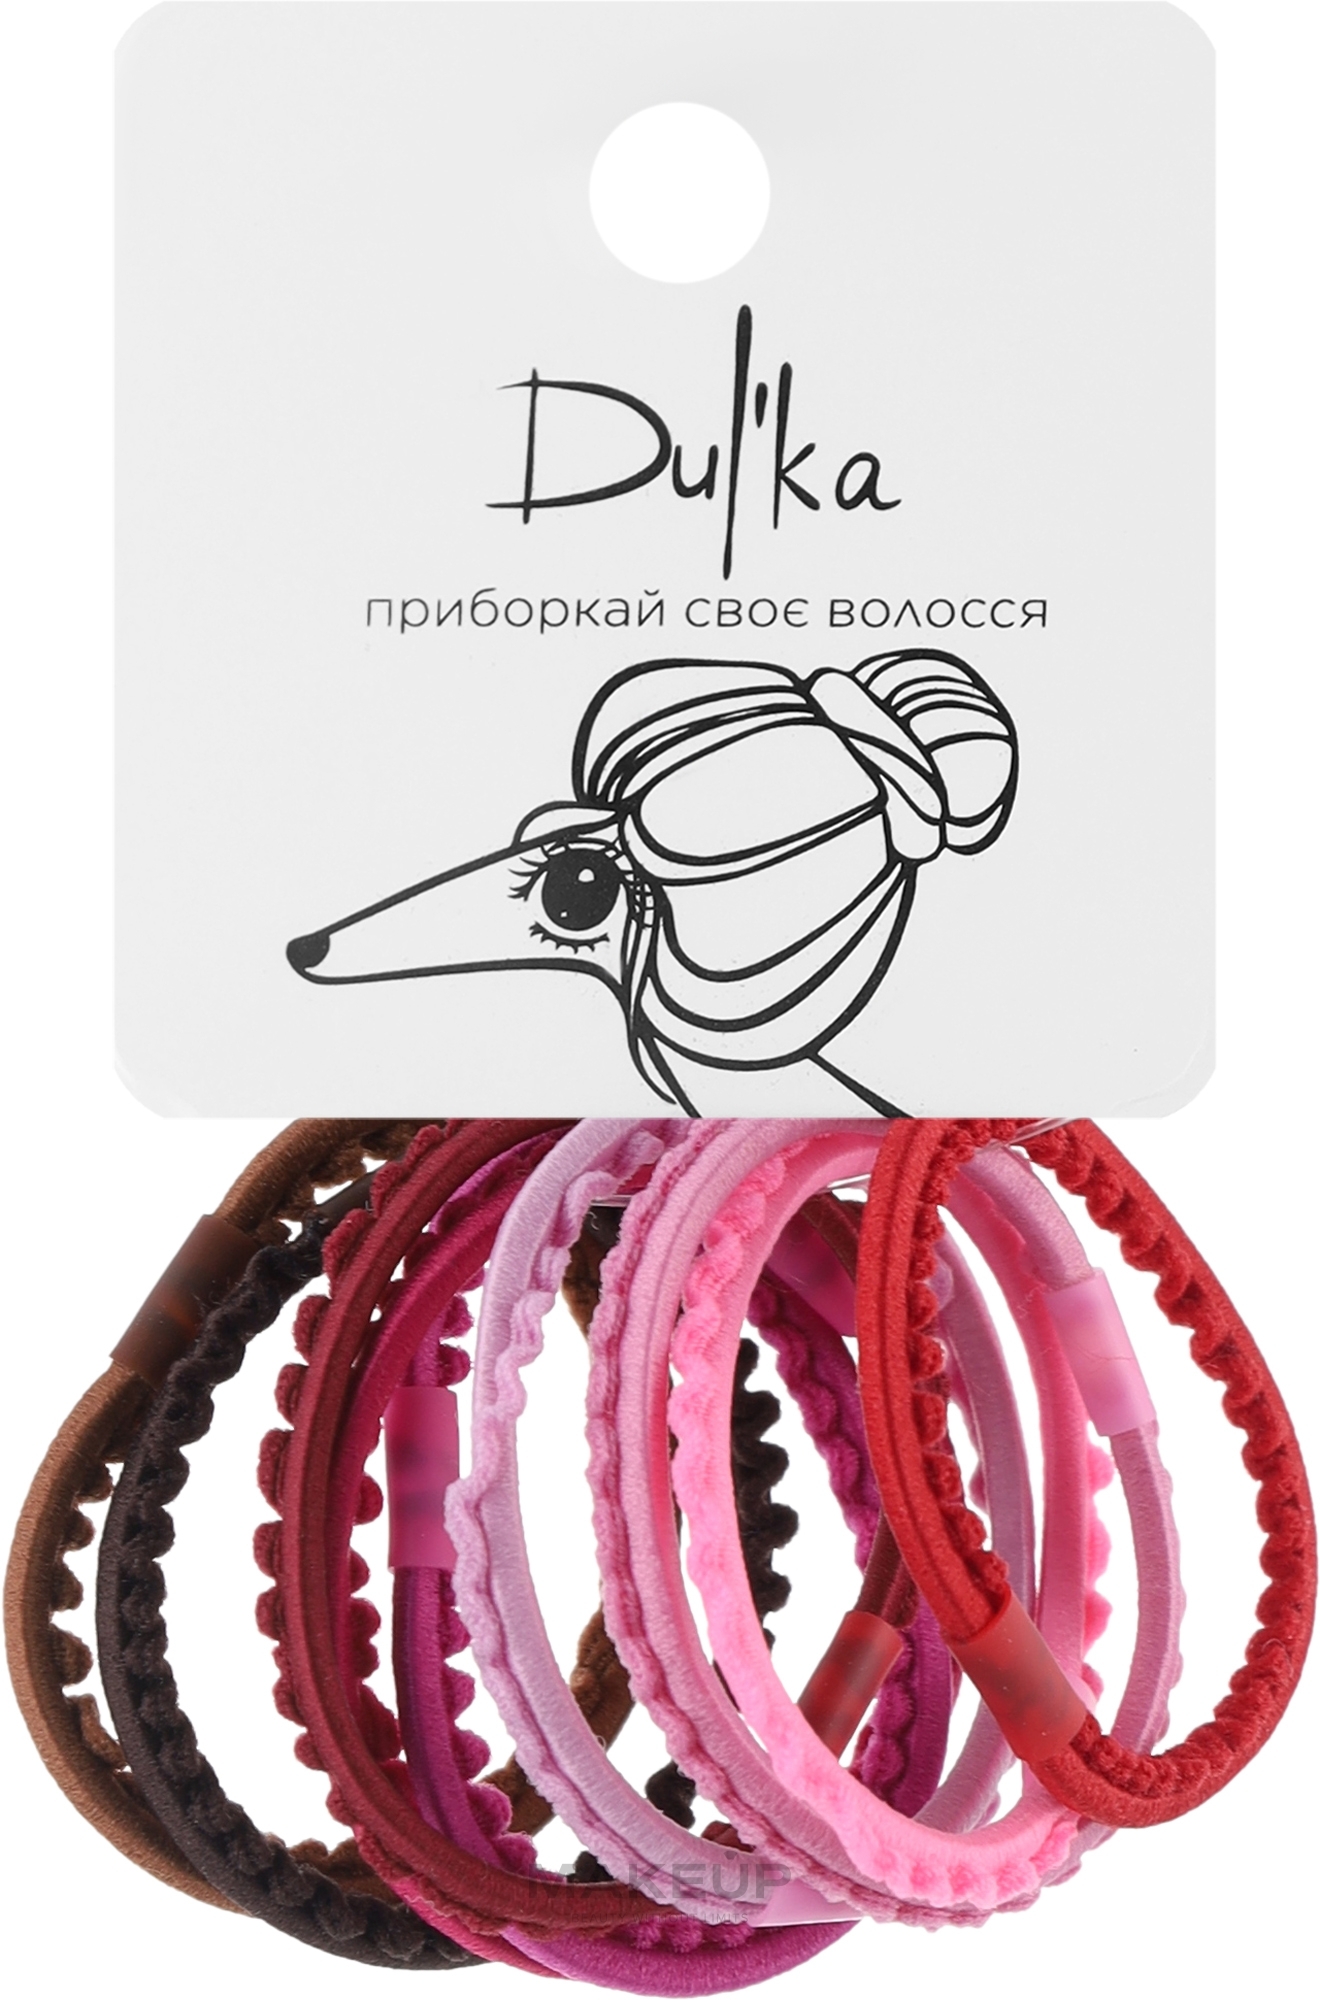 Набор разноцветных резинок для волос UH717719, 10 шт - Dulka  — фото 10шт